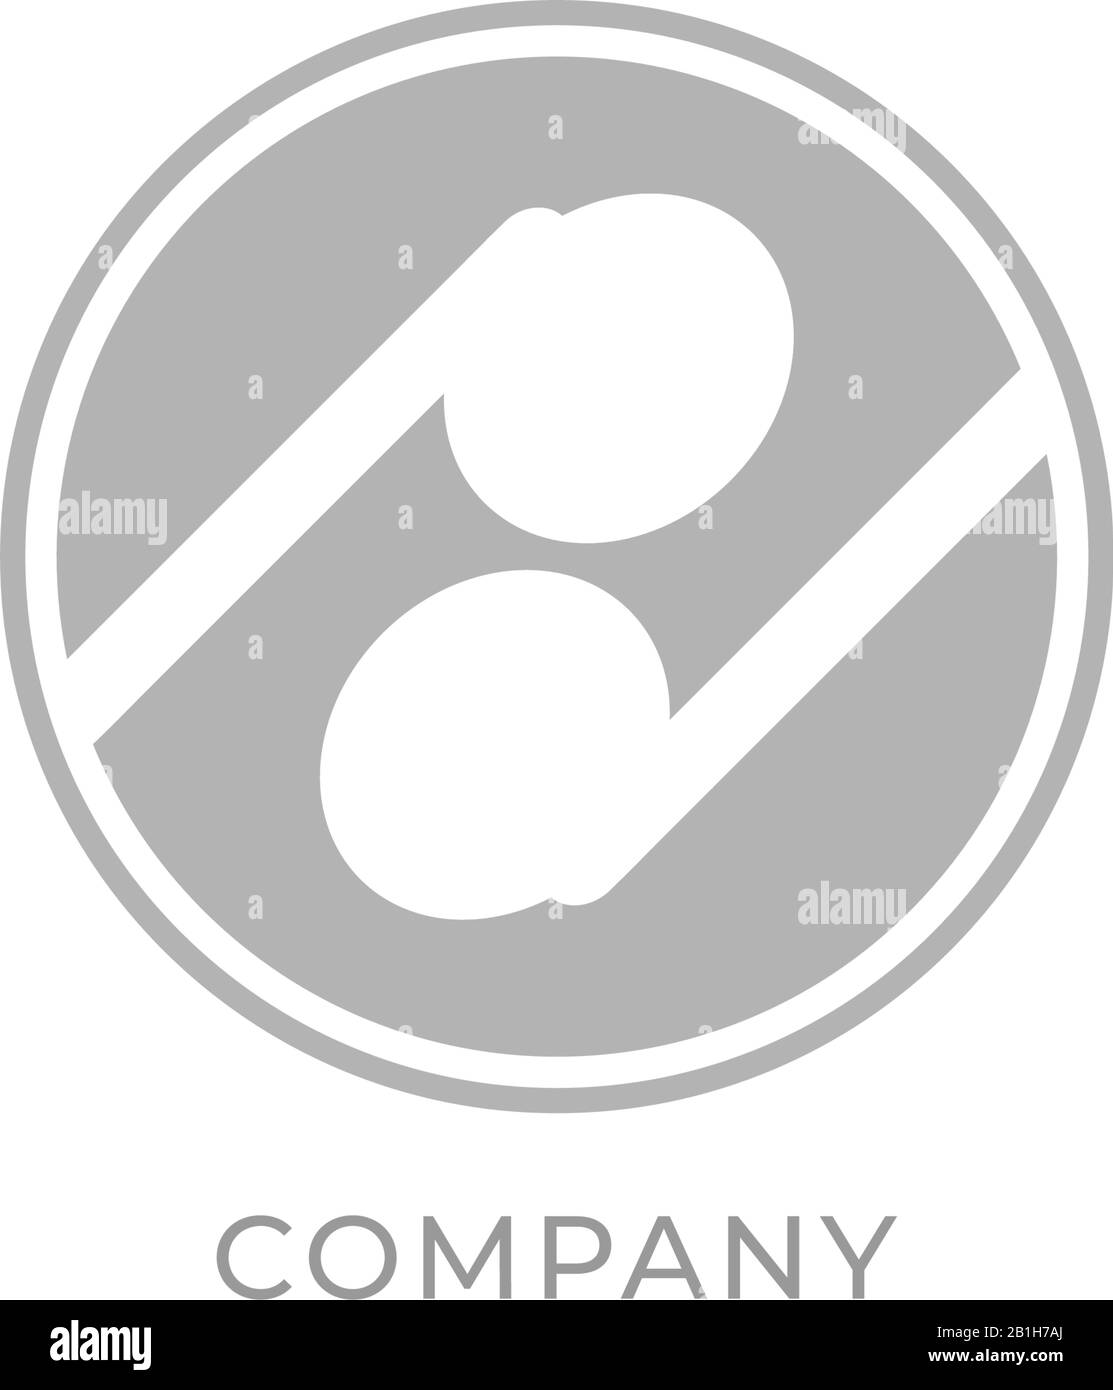 Klein geschriebener Buchstabe pd Alphabet Logo-Design-Vorlage isoliert auf weißem Hintergrund. Weißes TWS-Earphone-Symbol mit grauem Ellipsenformelement. Stock Vektor